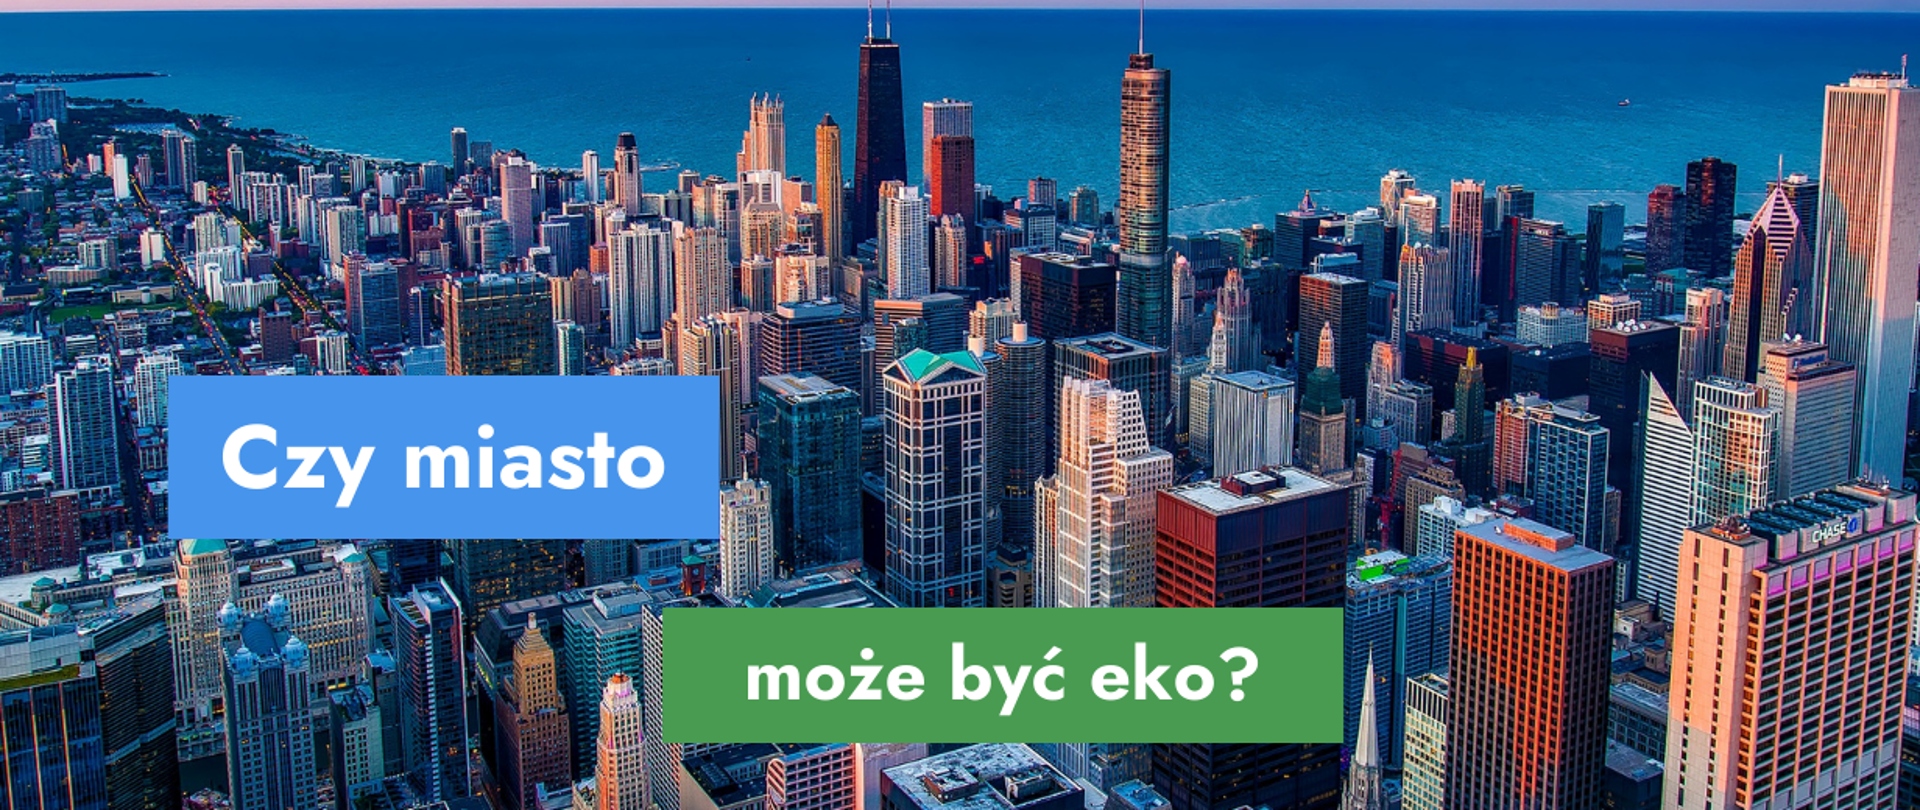 Na grafice zdjęcie drapaczy chmur w mieście oraz tekst: Czy miasto może być eko?